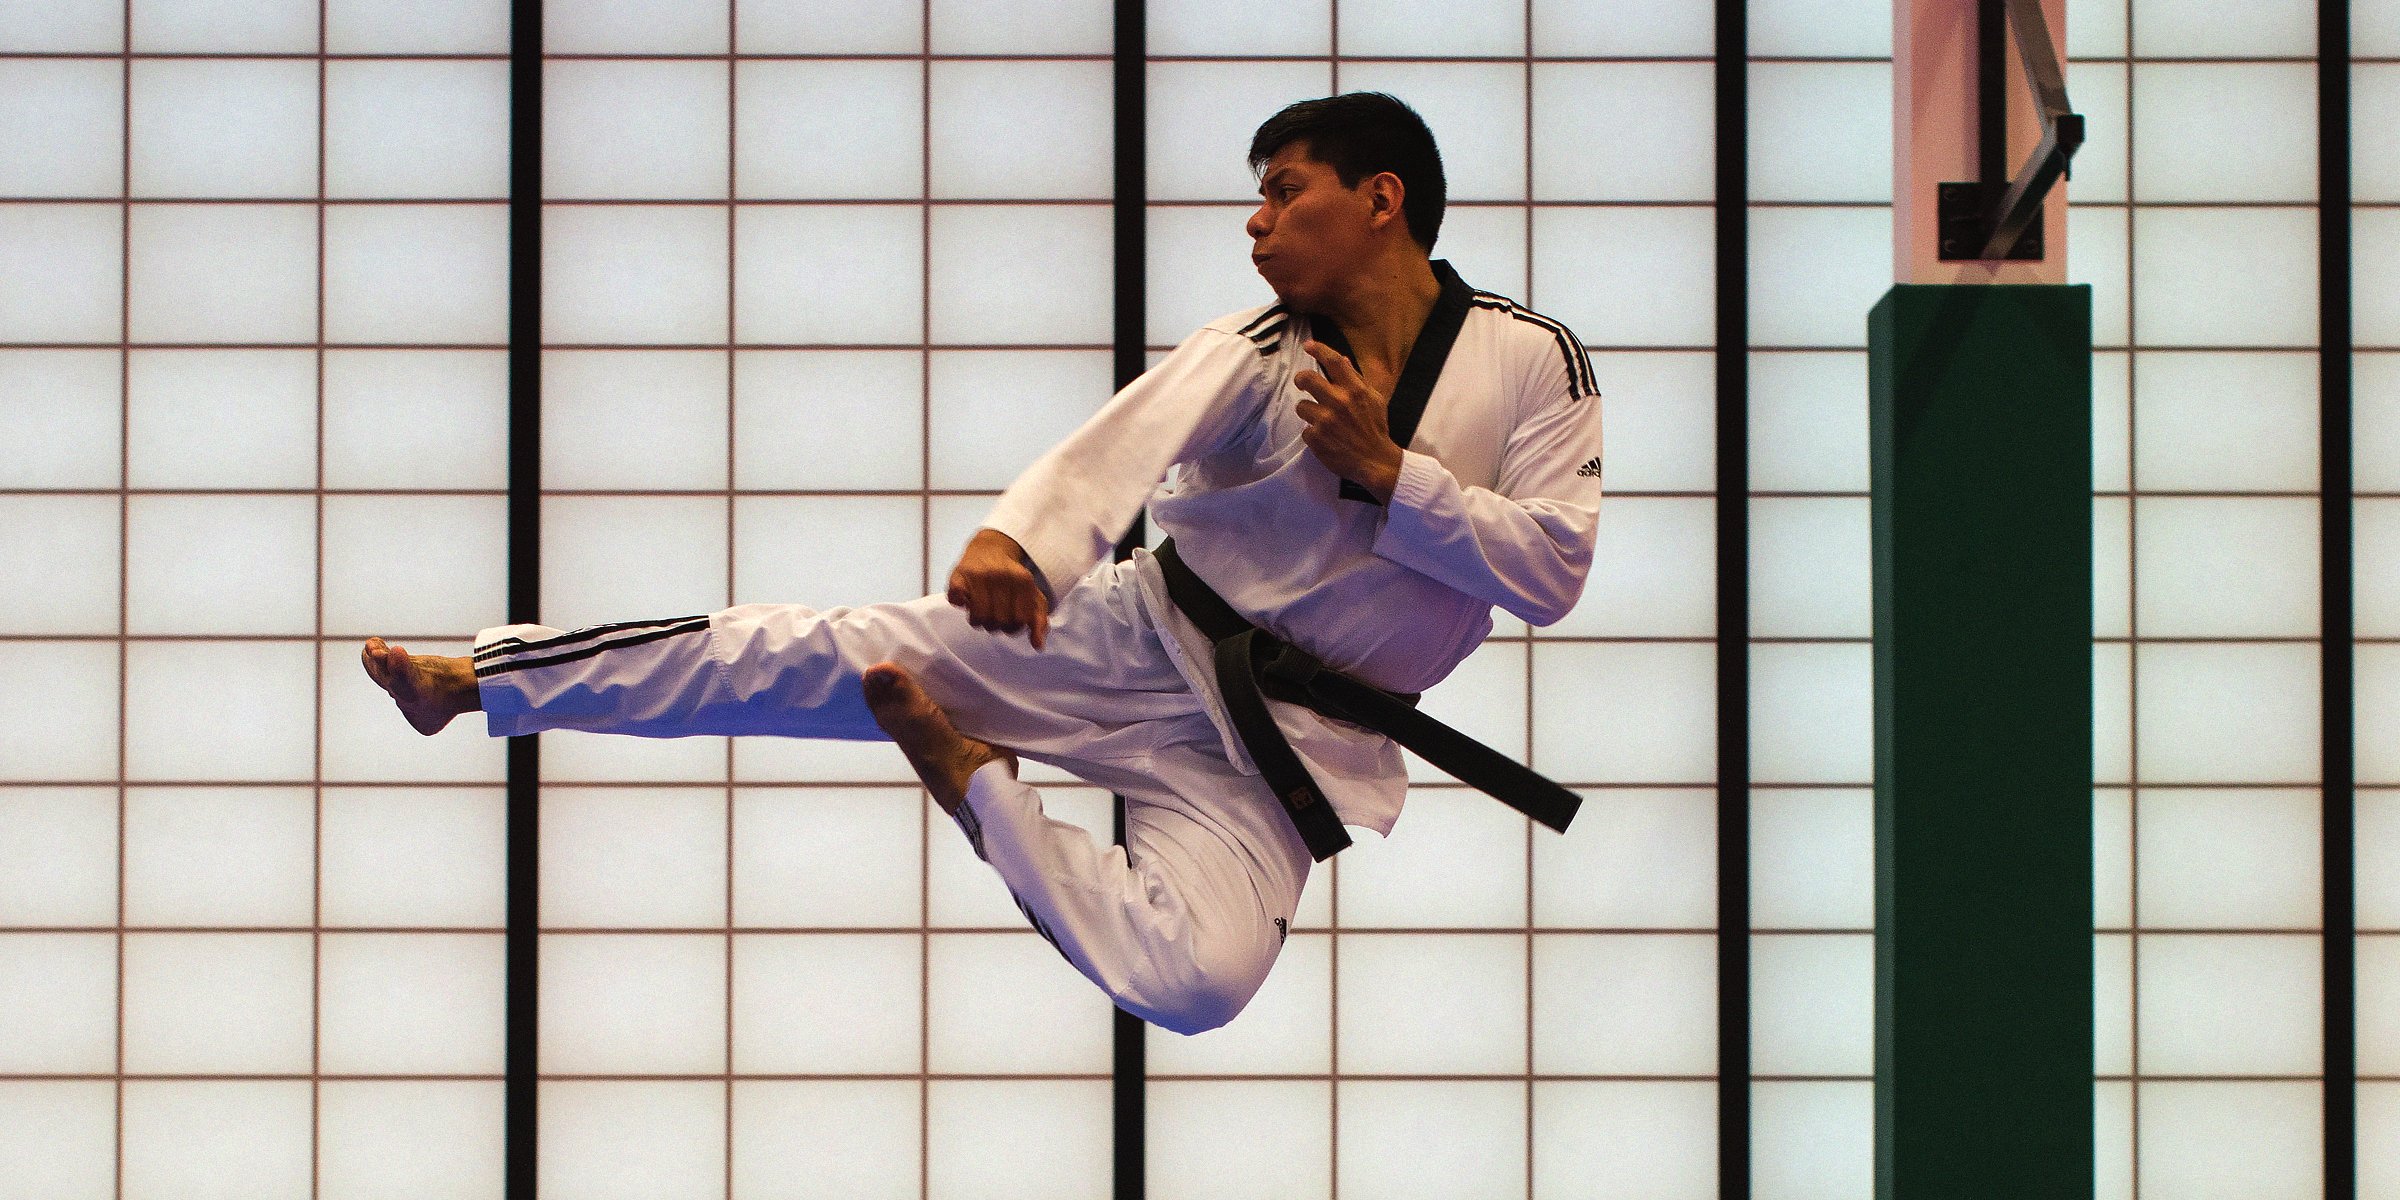 Unsplash | A man performing a martial arts move  